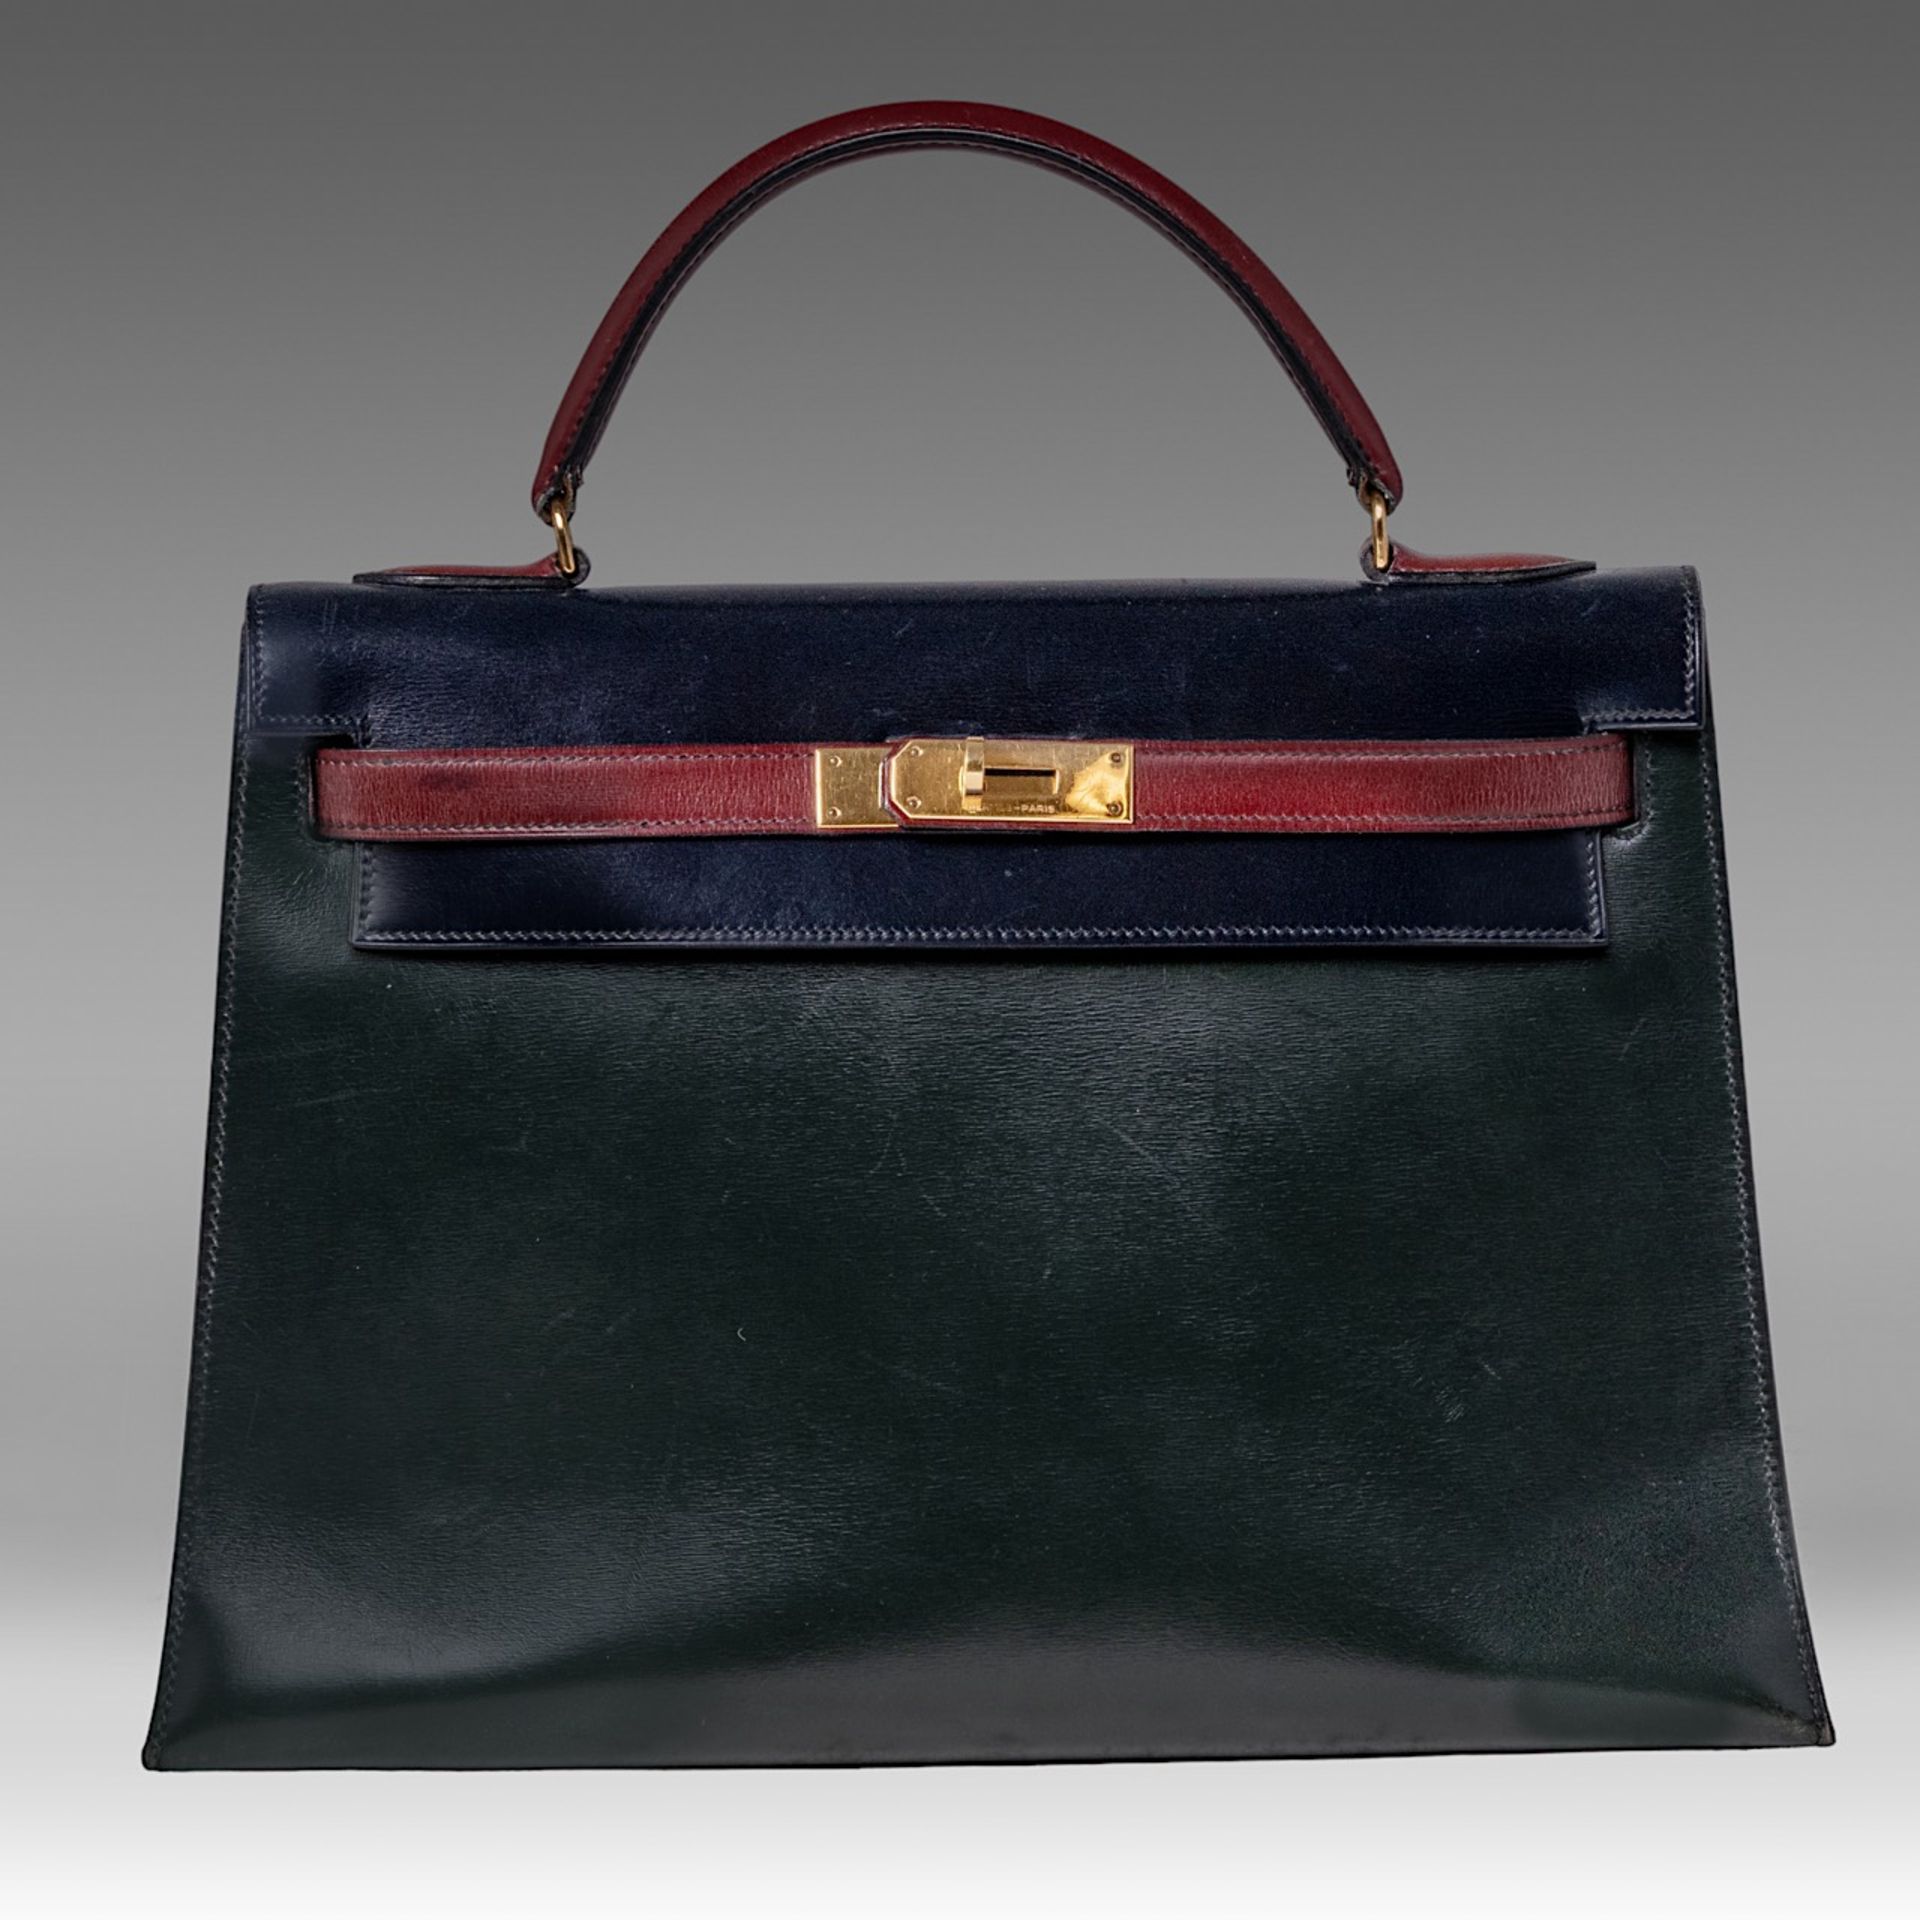 A vintage Hermes 'Kelly' 32 handbag, in rouge vif/vert fonce/bleu indigo box calfskin, with gilt met - Image 3 of 7